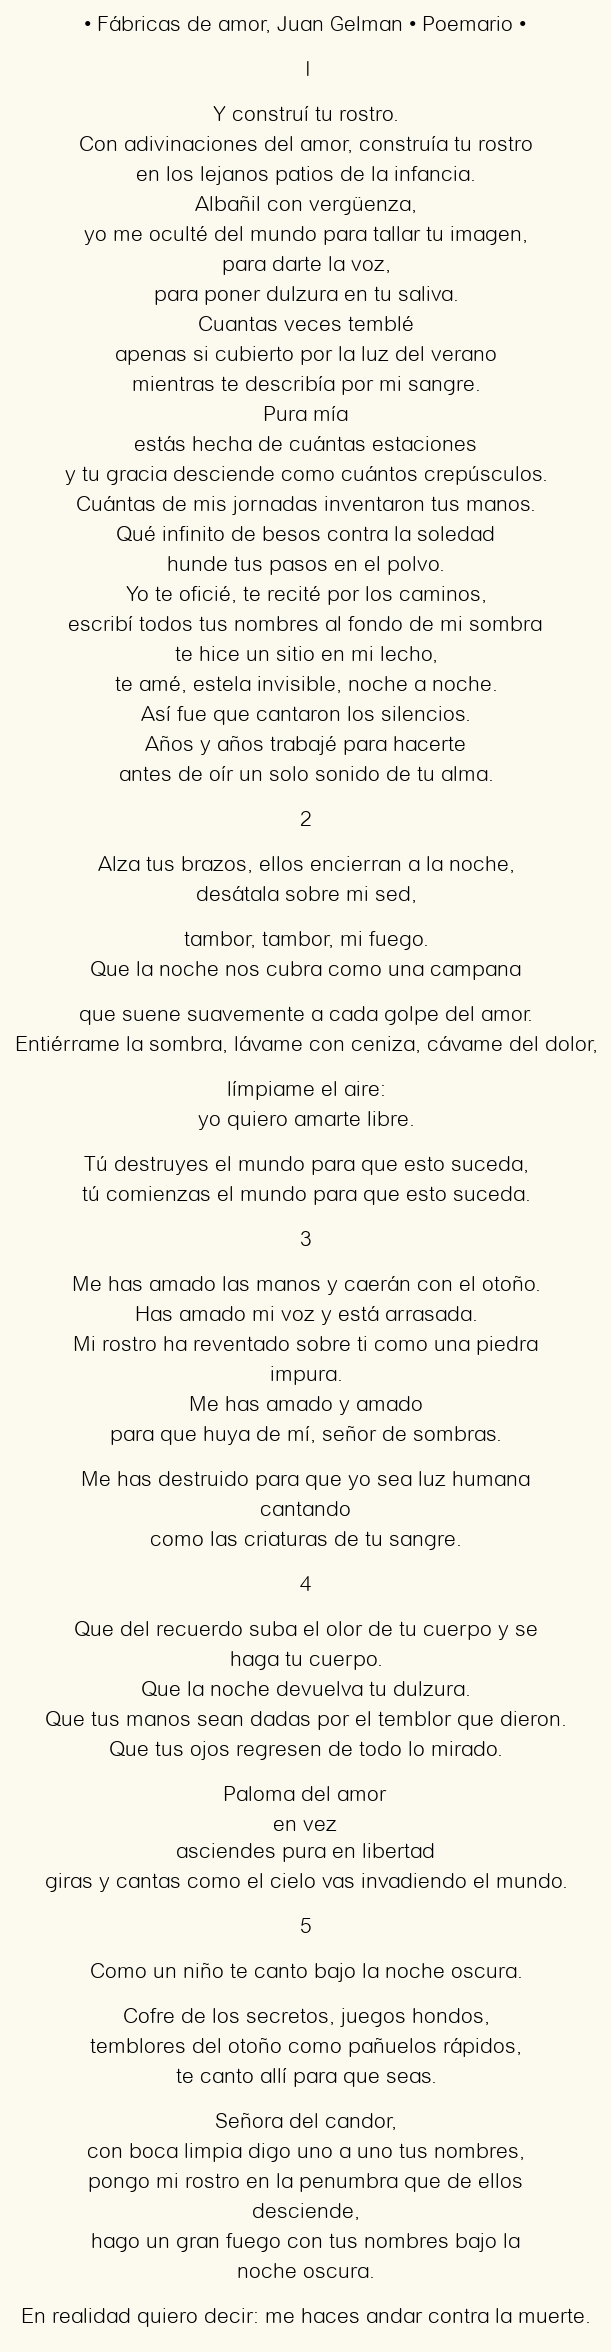 Imagen con el poema Fábricas de amor, por Juan Gelman